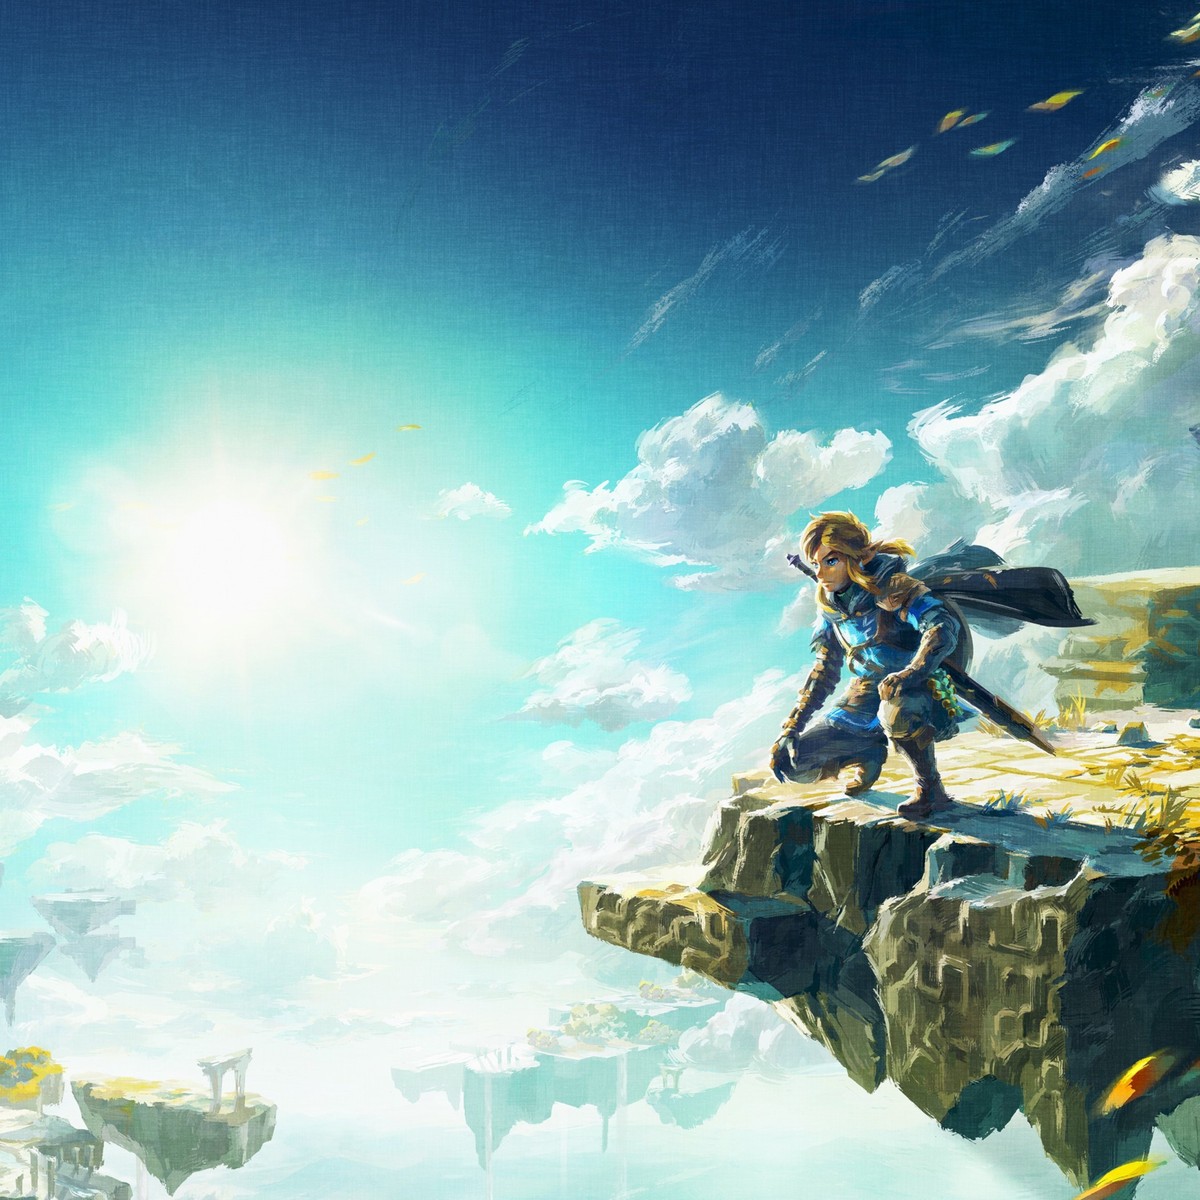 The Legend of Zelda: Tears of the Kingdom vaza 12 dias antes de seu  lançamento e está jogável no PC